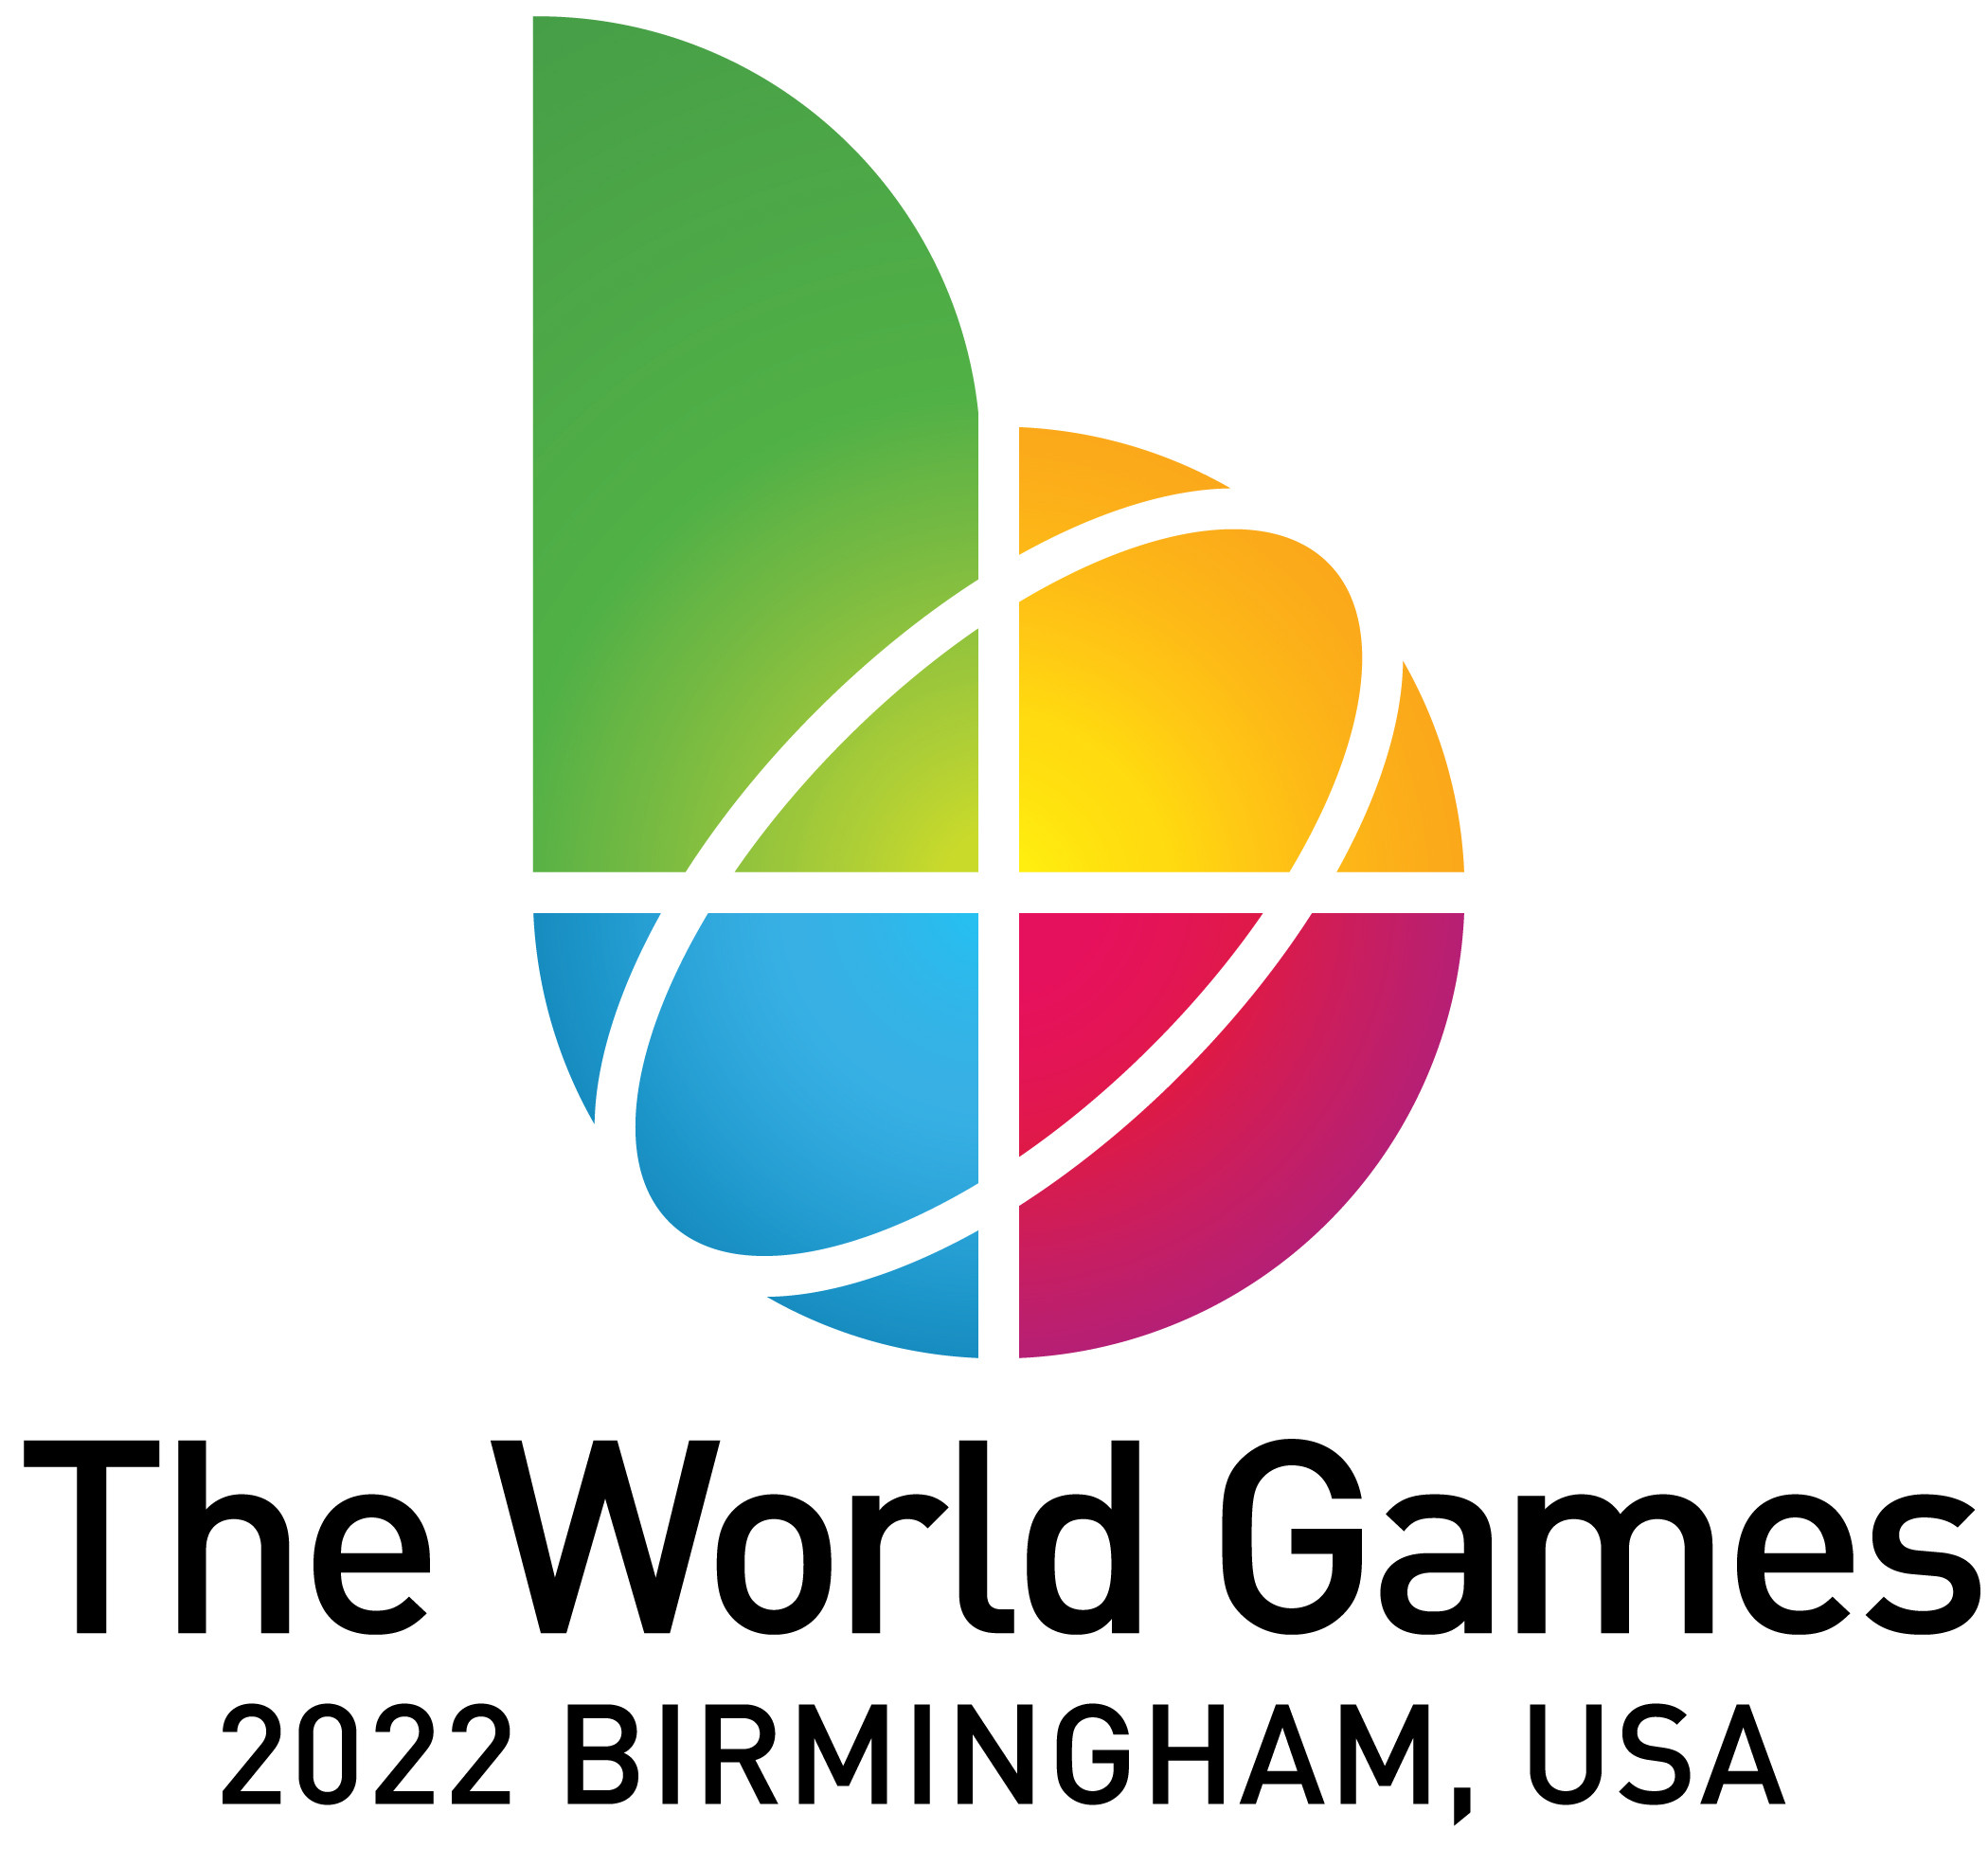 TWG 2022 Birmingham, USA